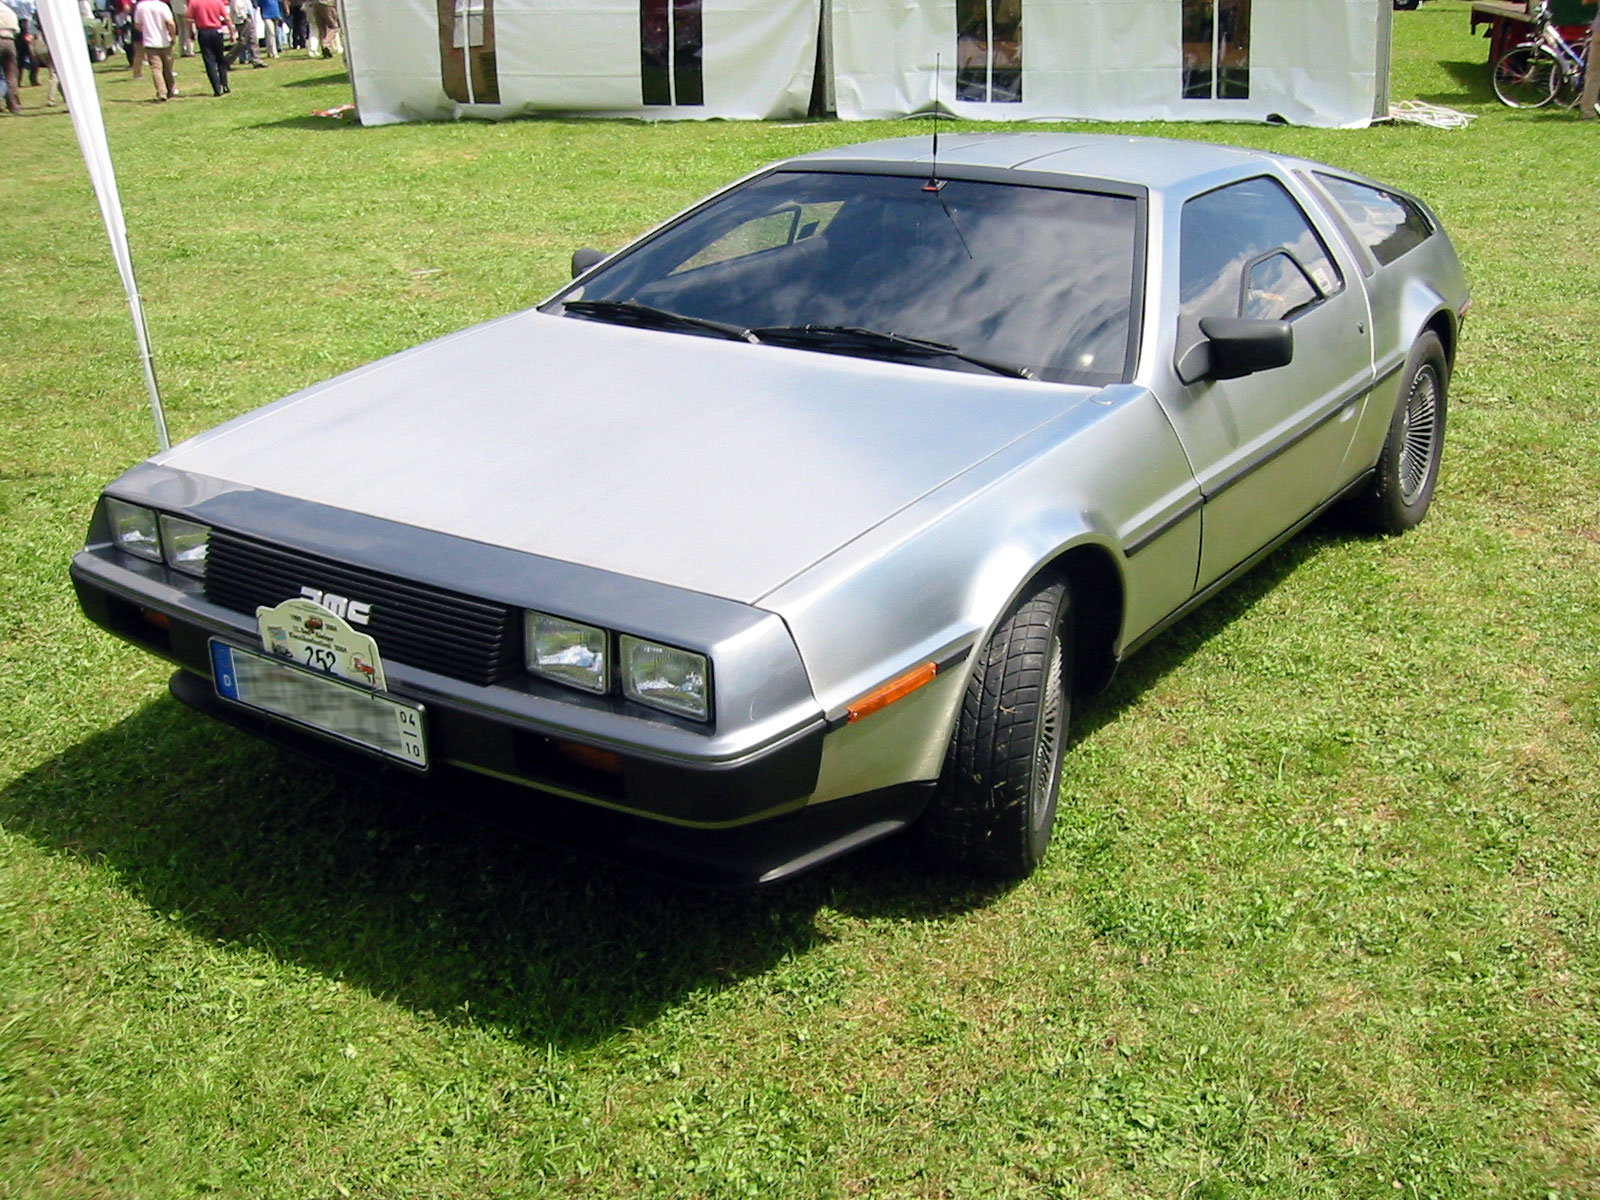 DeLorean time machine - Wikipedia